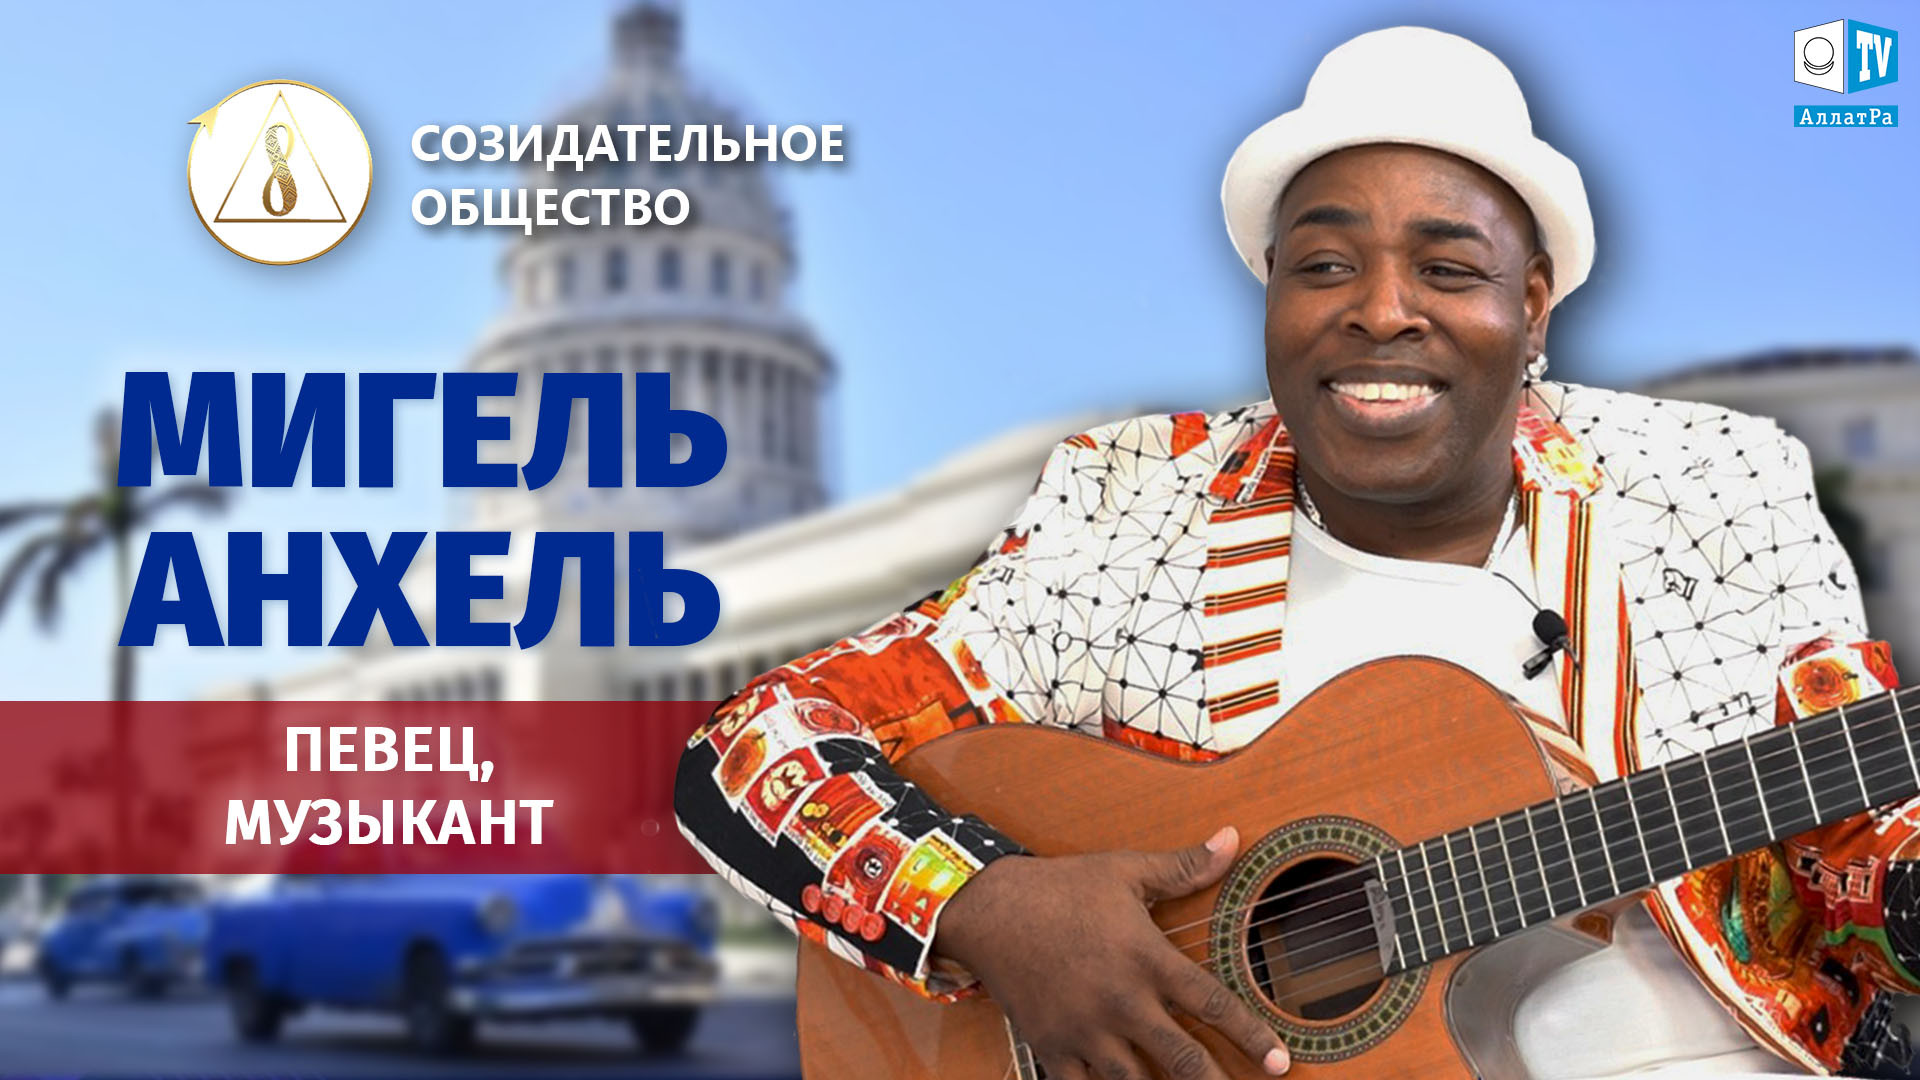 Мигель Анхель — кубинский певец, музыкант о Созидательном Обществе